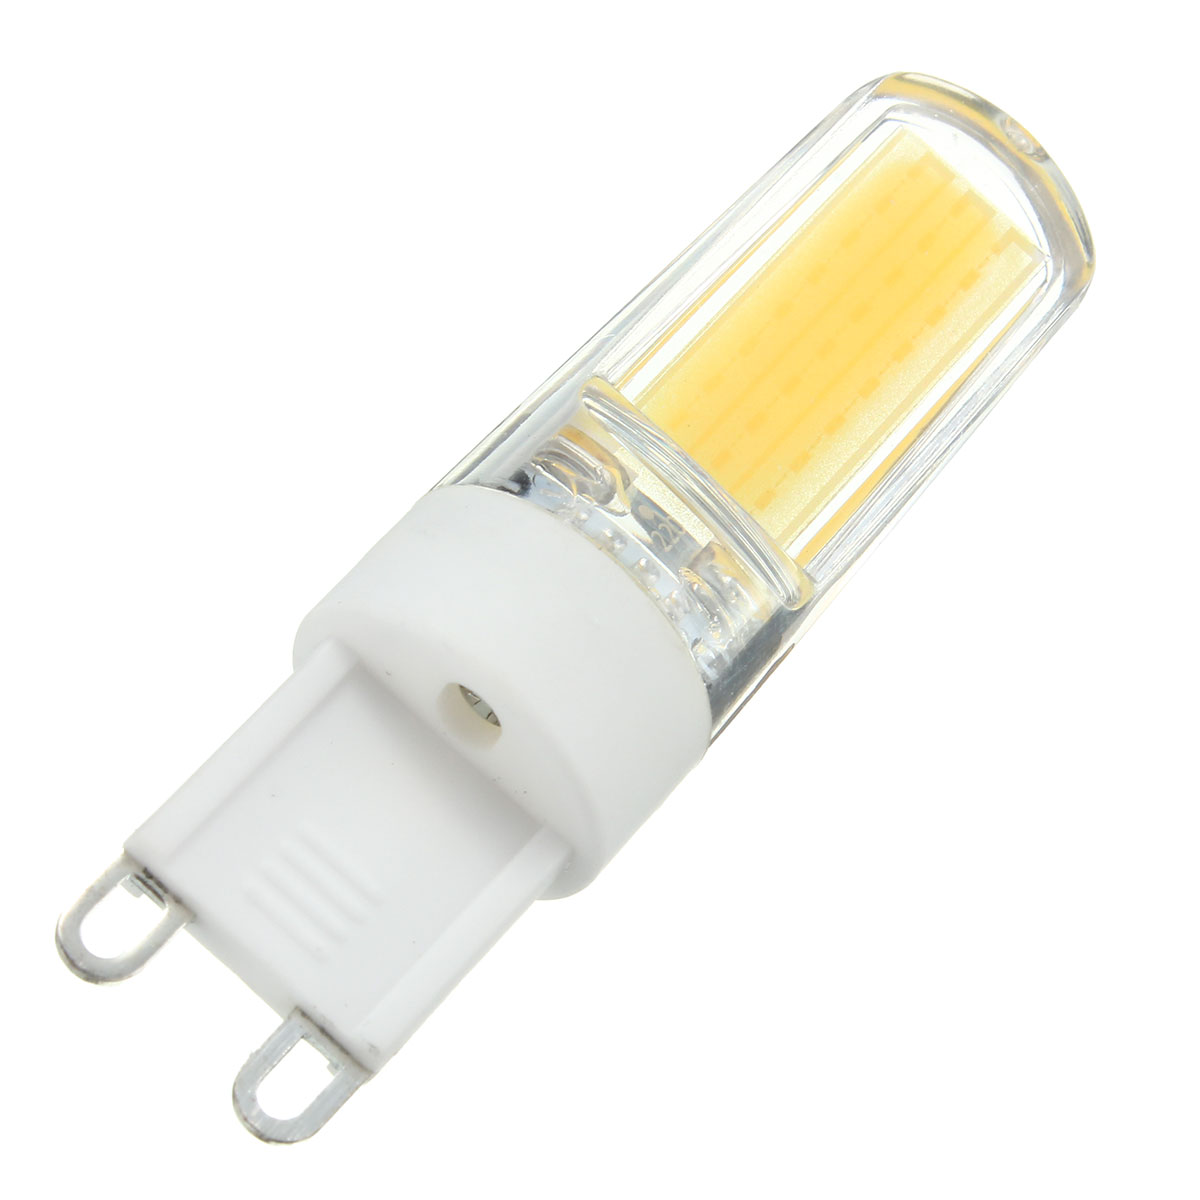 G9-LED-3W-Pure-White-Warm-White-COB-LED-PC-Material-Light-Lamp-Bulb-AC220V-1062195-8